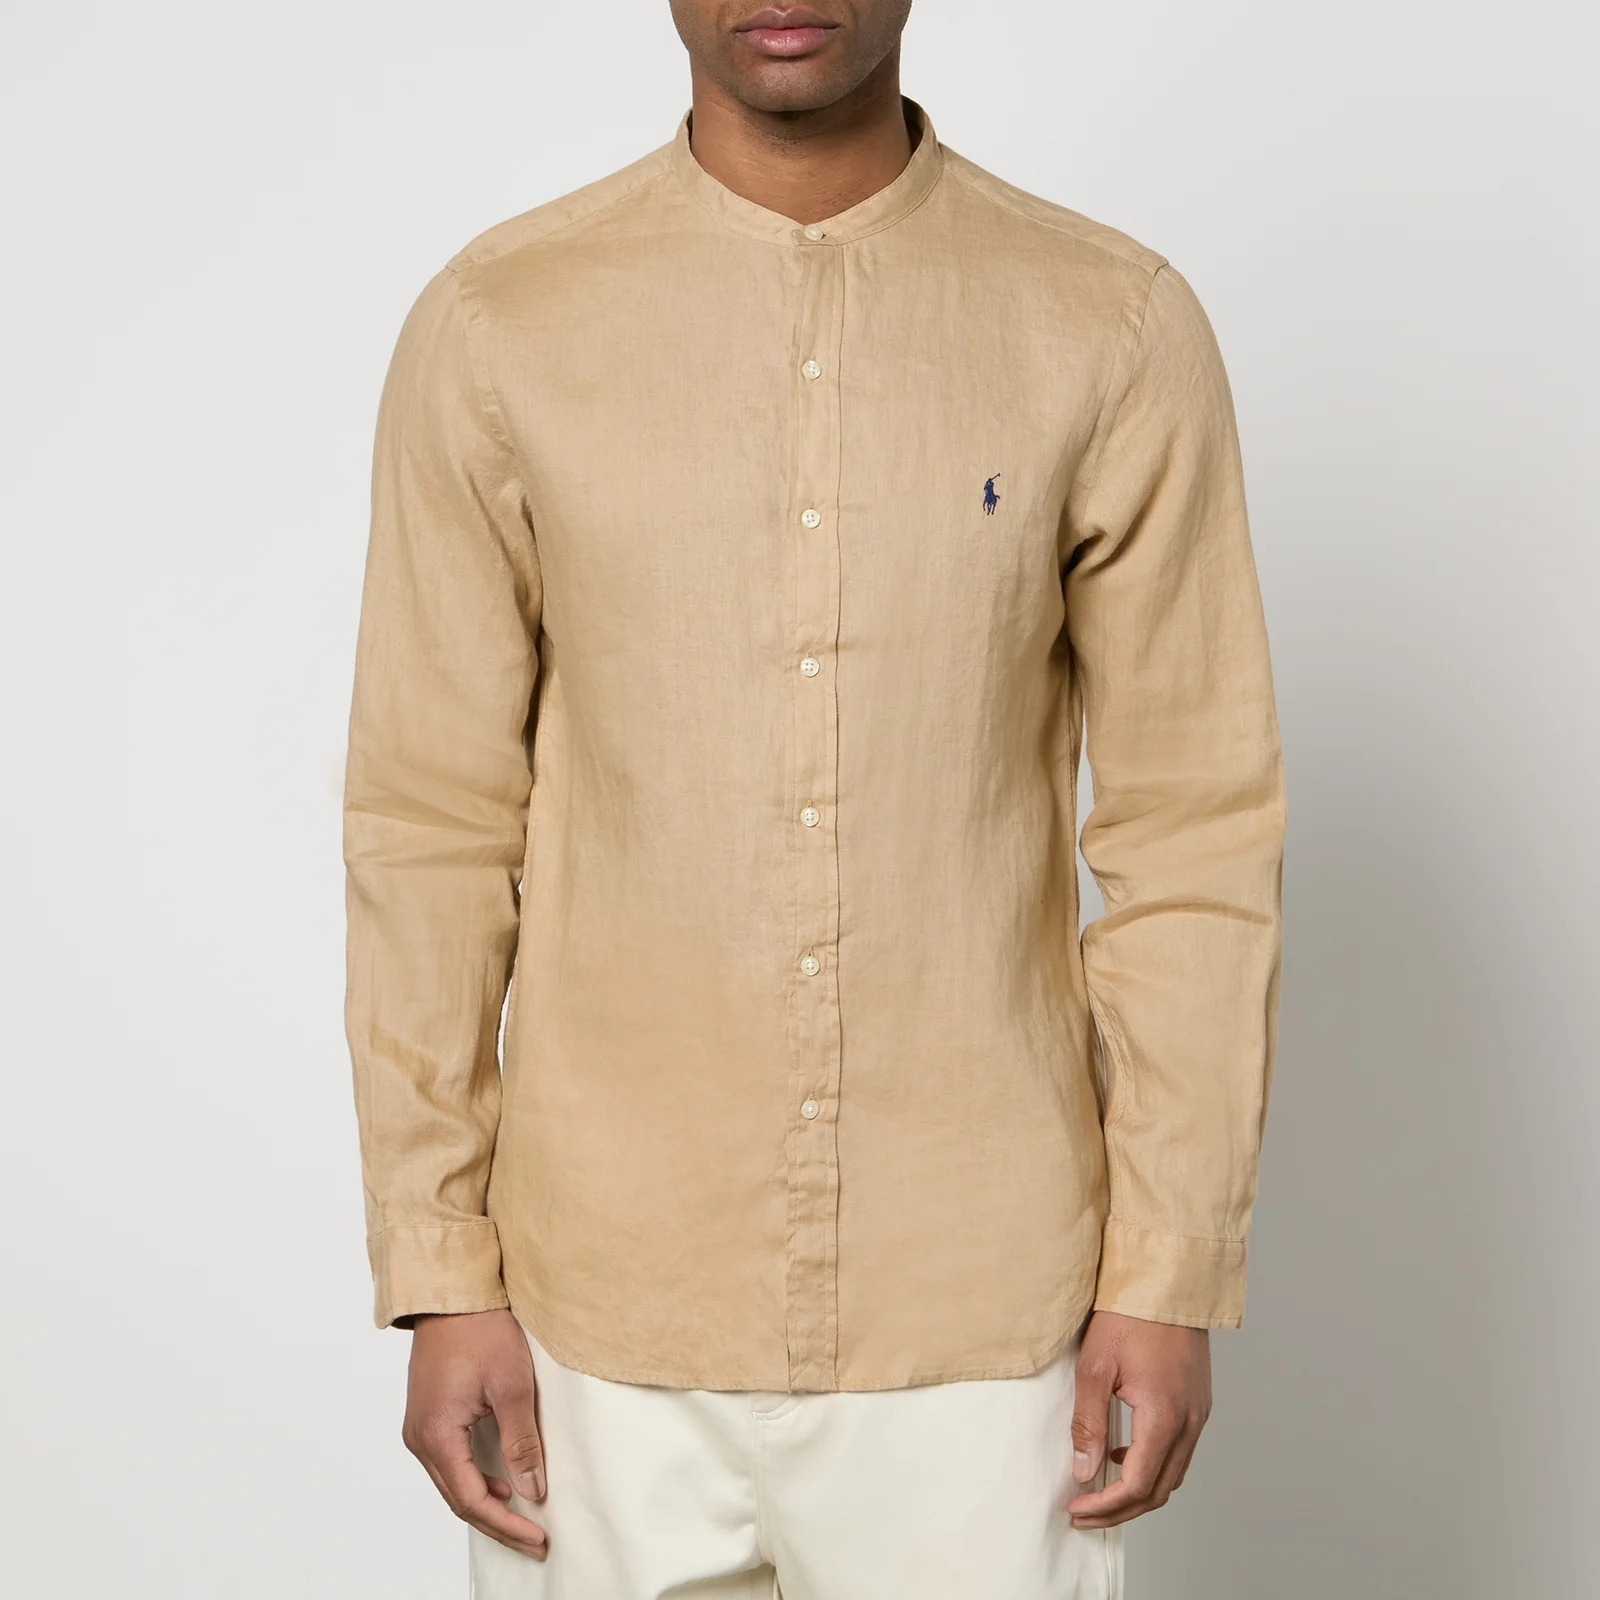 Polo Ralph Lauren Linen Shirt - S Image 1